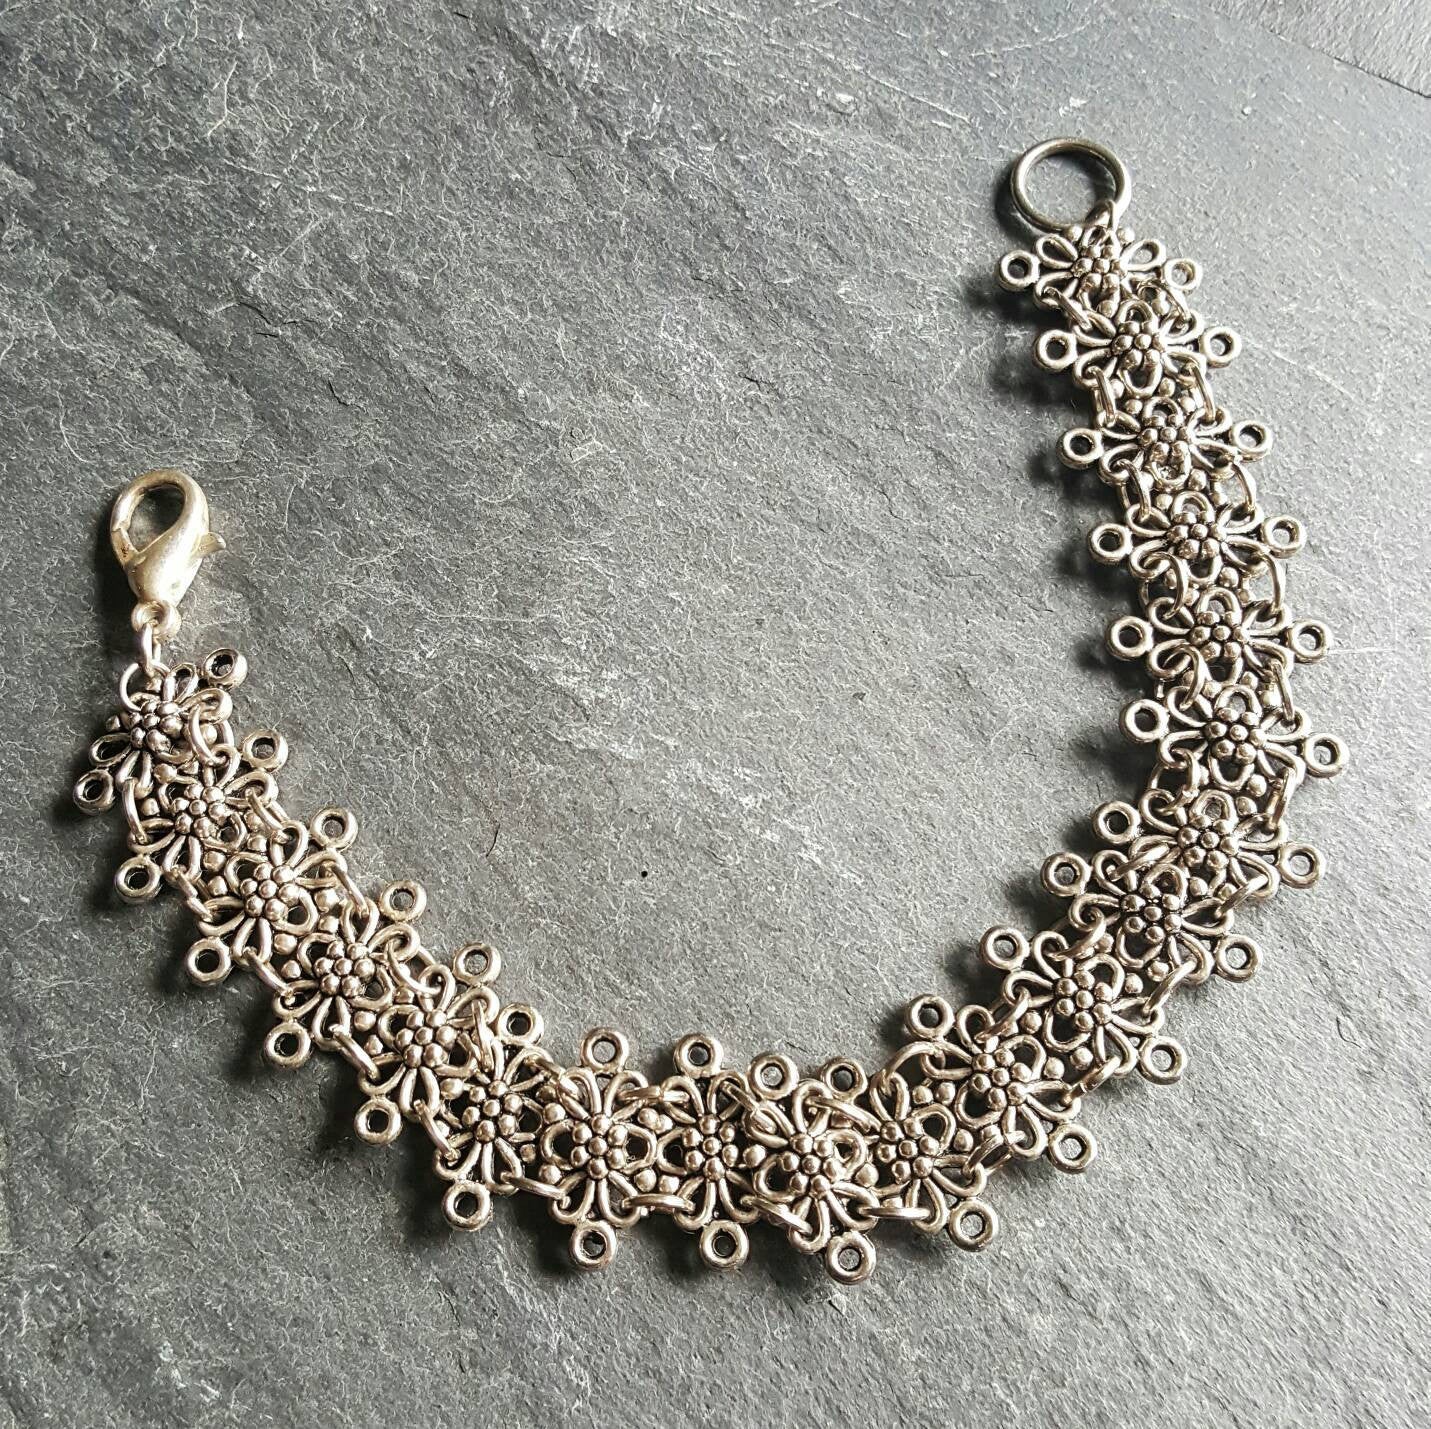 Silver Medieval Statement Bracelet Ren Faire Jewelry Gift - DRAVYNMOOR